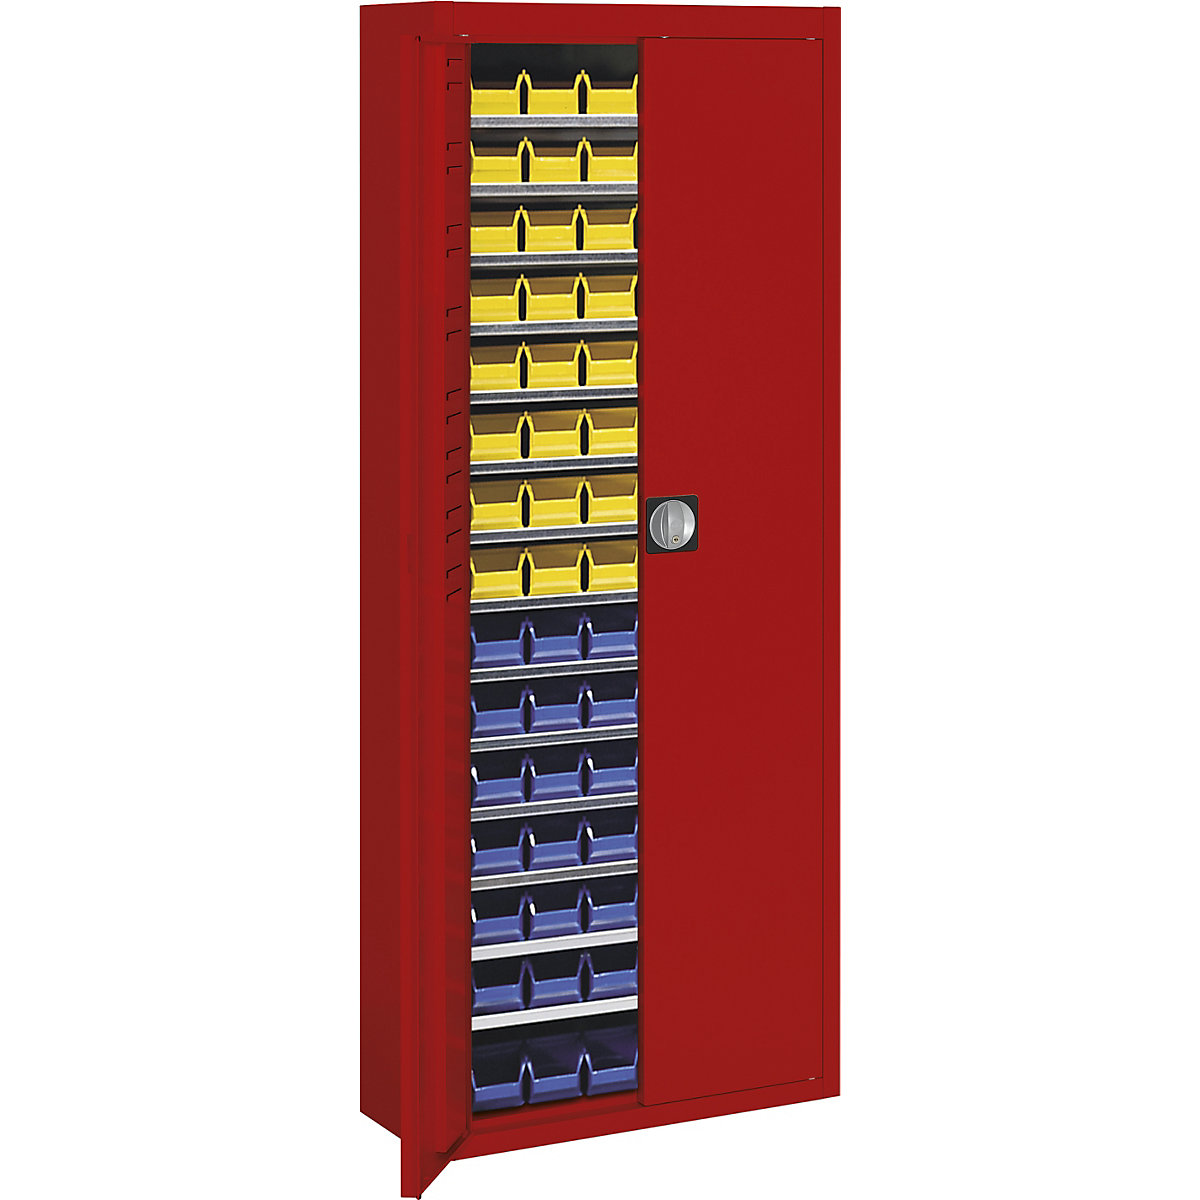 Skladová skříň s přepravkami s viditelným obsahem – mauser, v x š x h 1740 x 680 x 280 mm, jednobarevné, červená, 90 přepravek-5